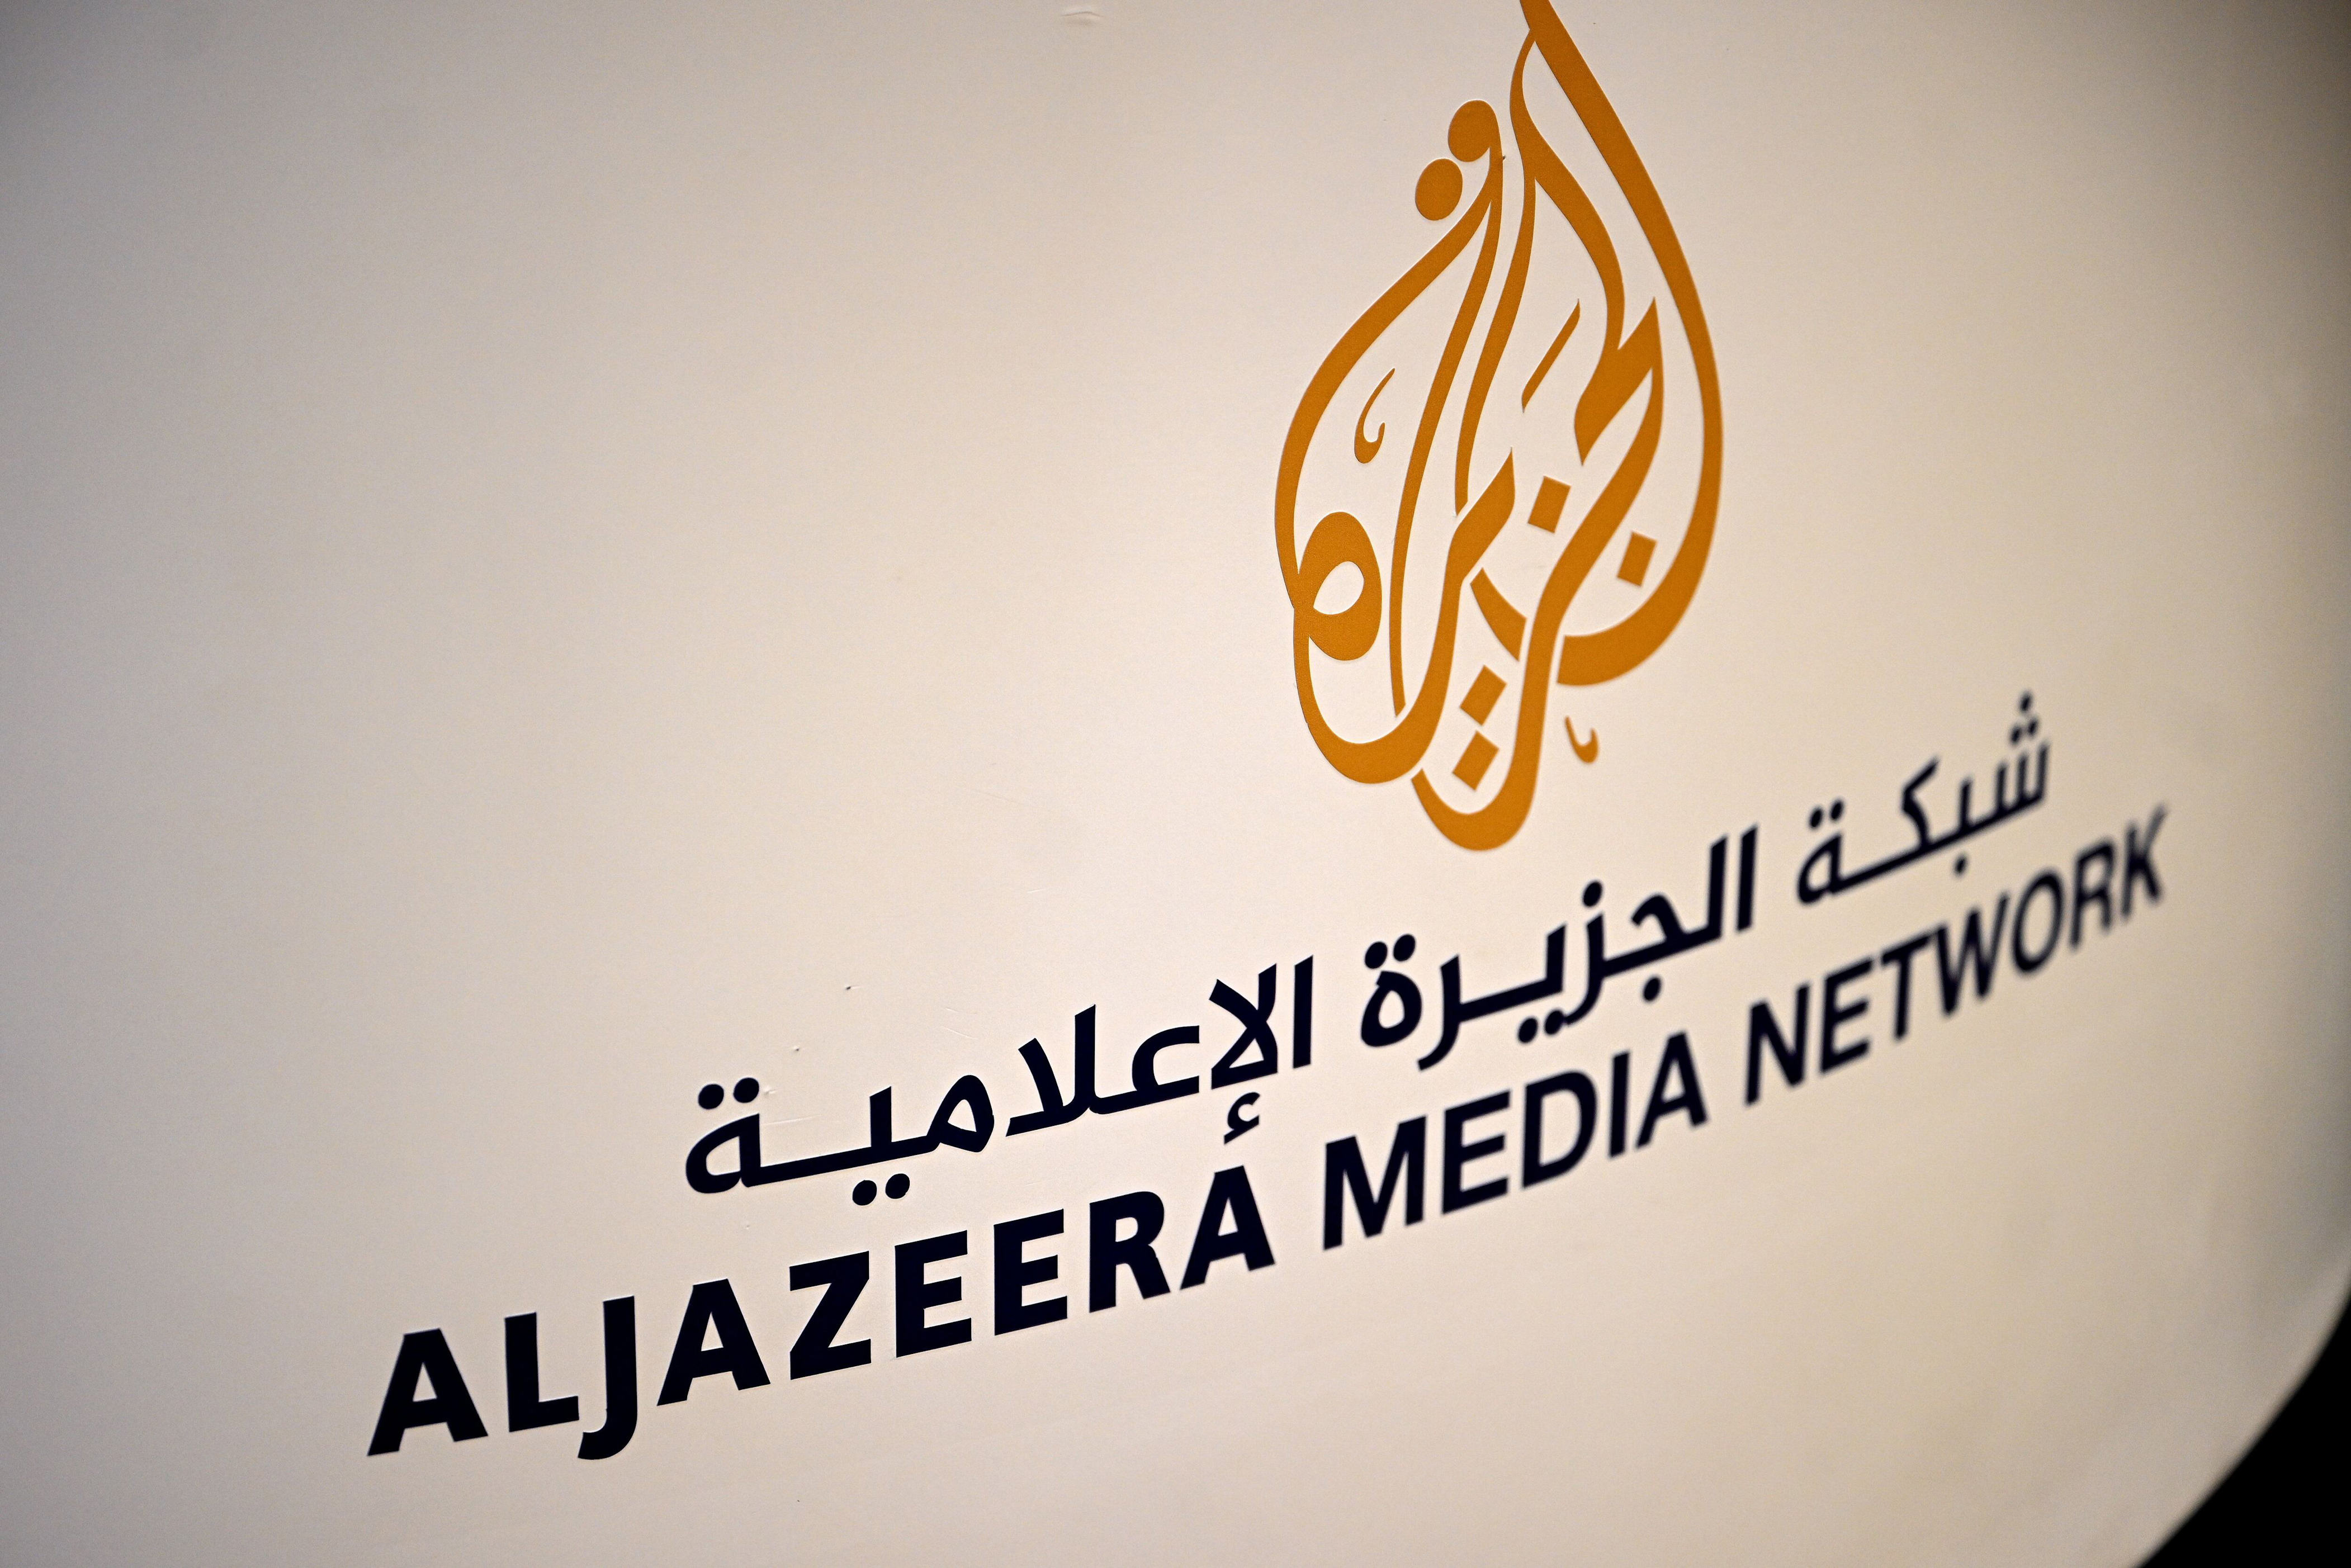 israel cerró la cadena de noticias al jazeera en el país